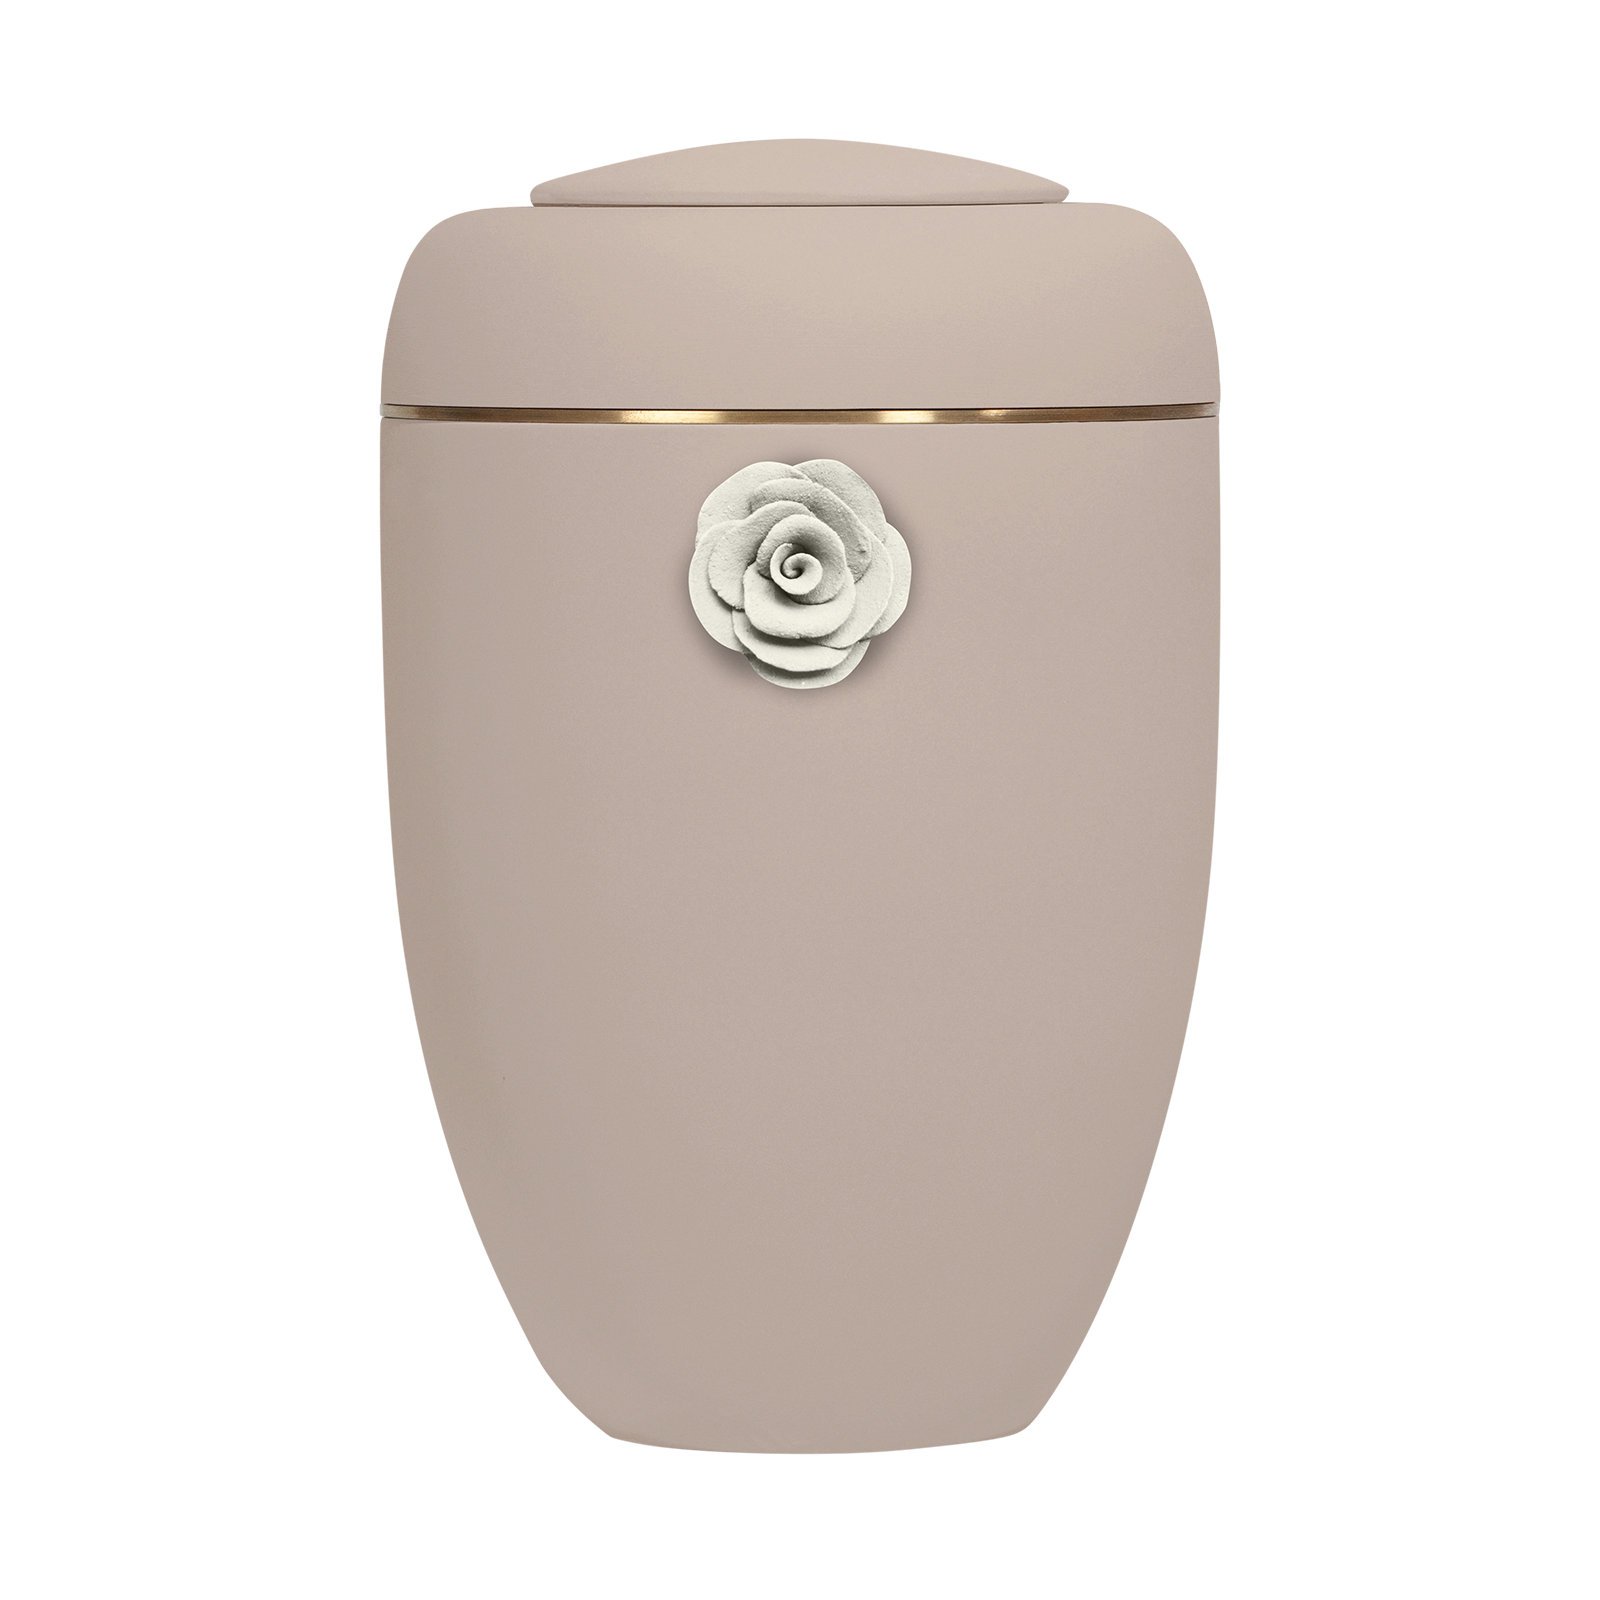 Oxidrote Symbol-Urne mit weißer Tonrose und Messingscheibe